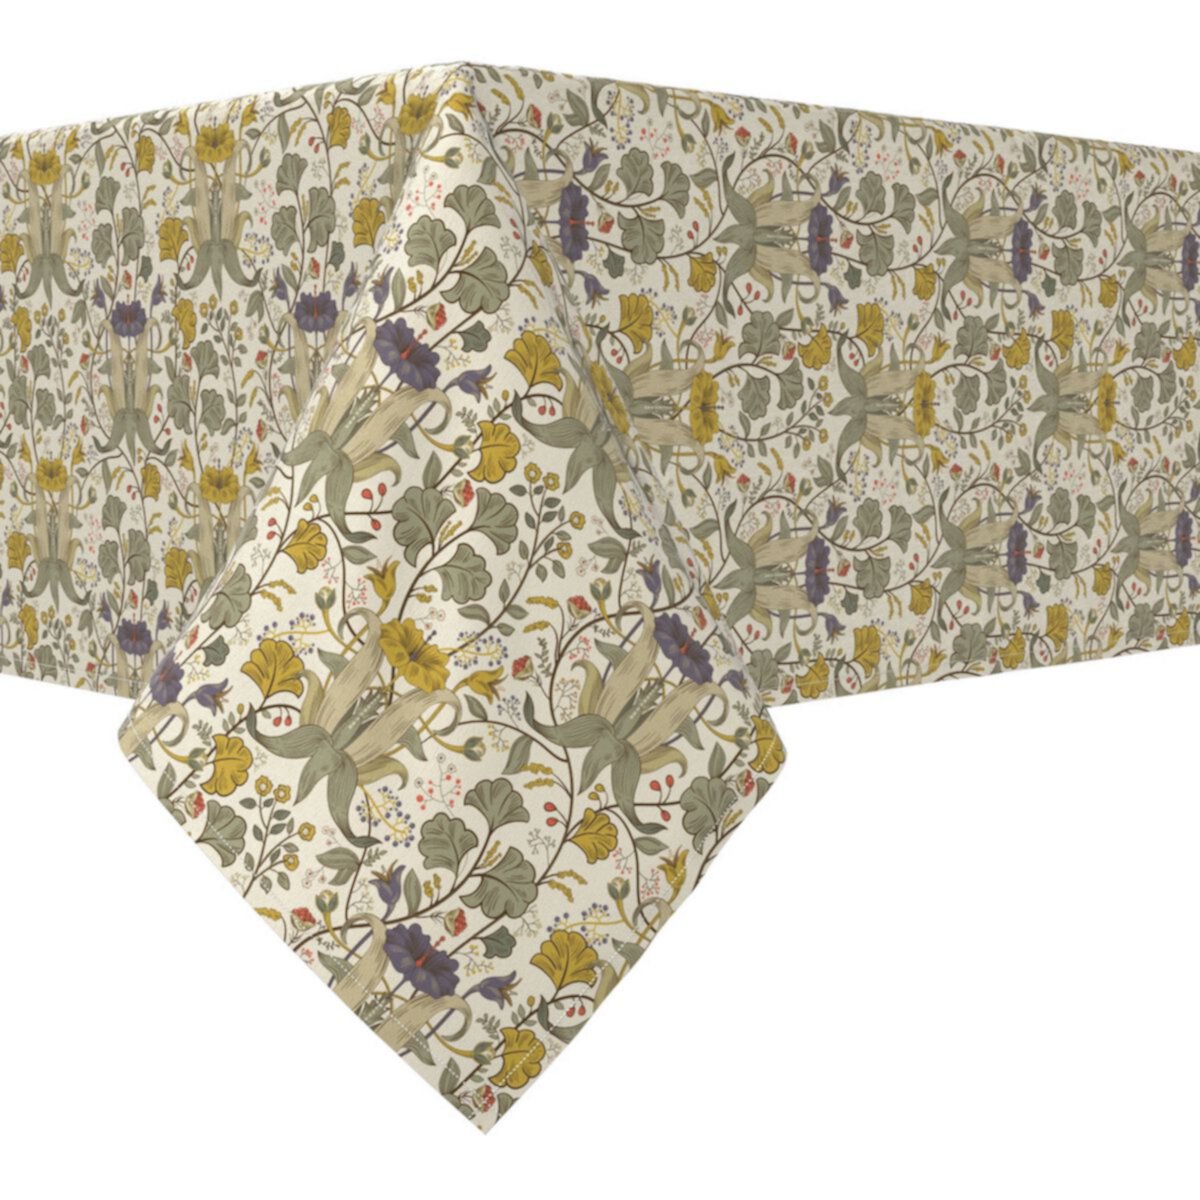 Прямоугольная скатерть, 100 % хлопок, 60x84 дюйма, цветочный принт 129 Fabric Textile Products